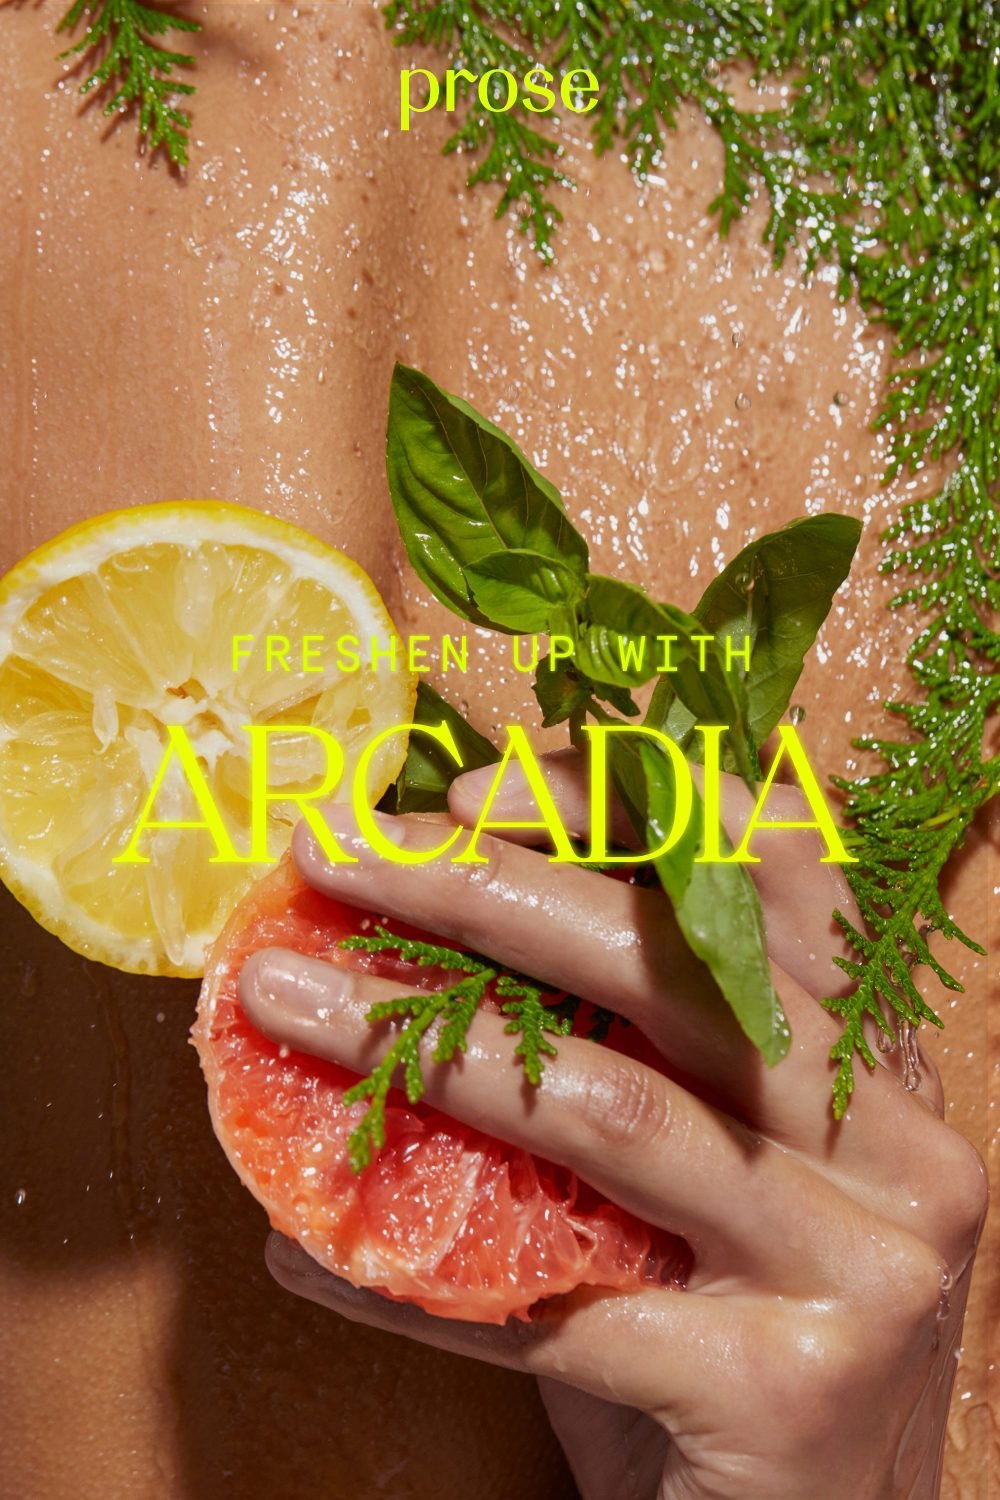 Prose Arcadia - Image #19.jpg